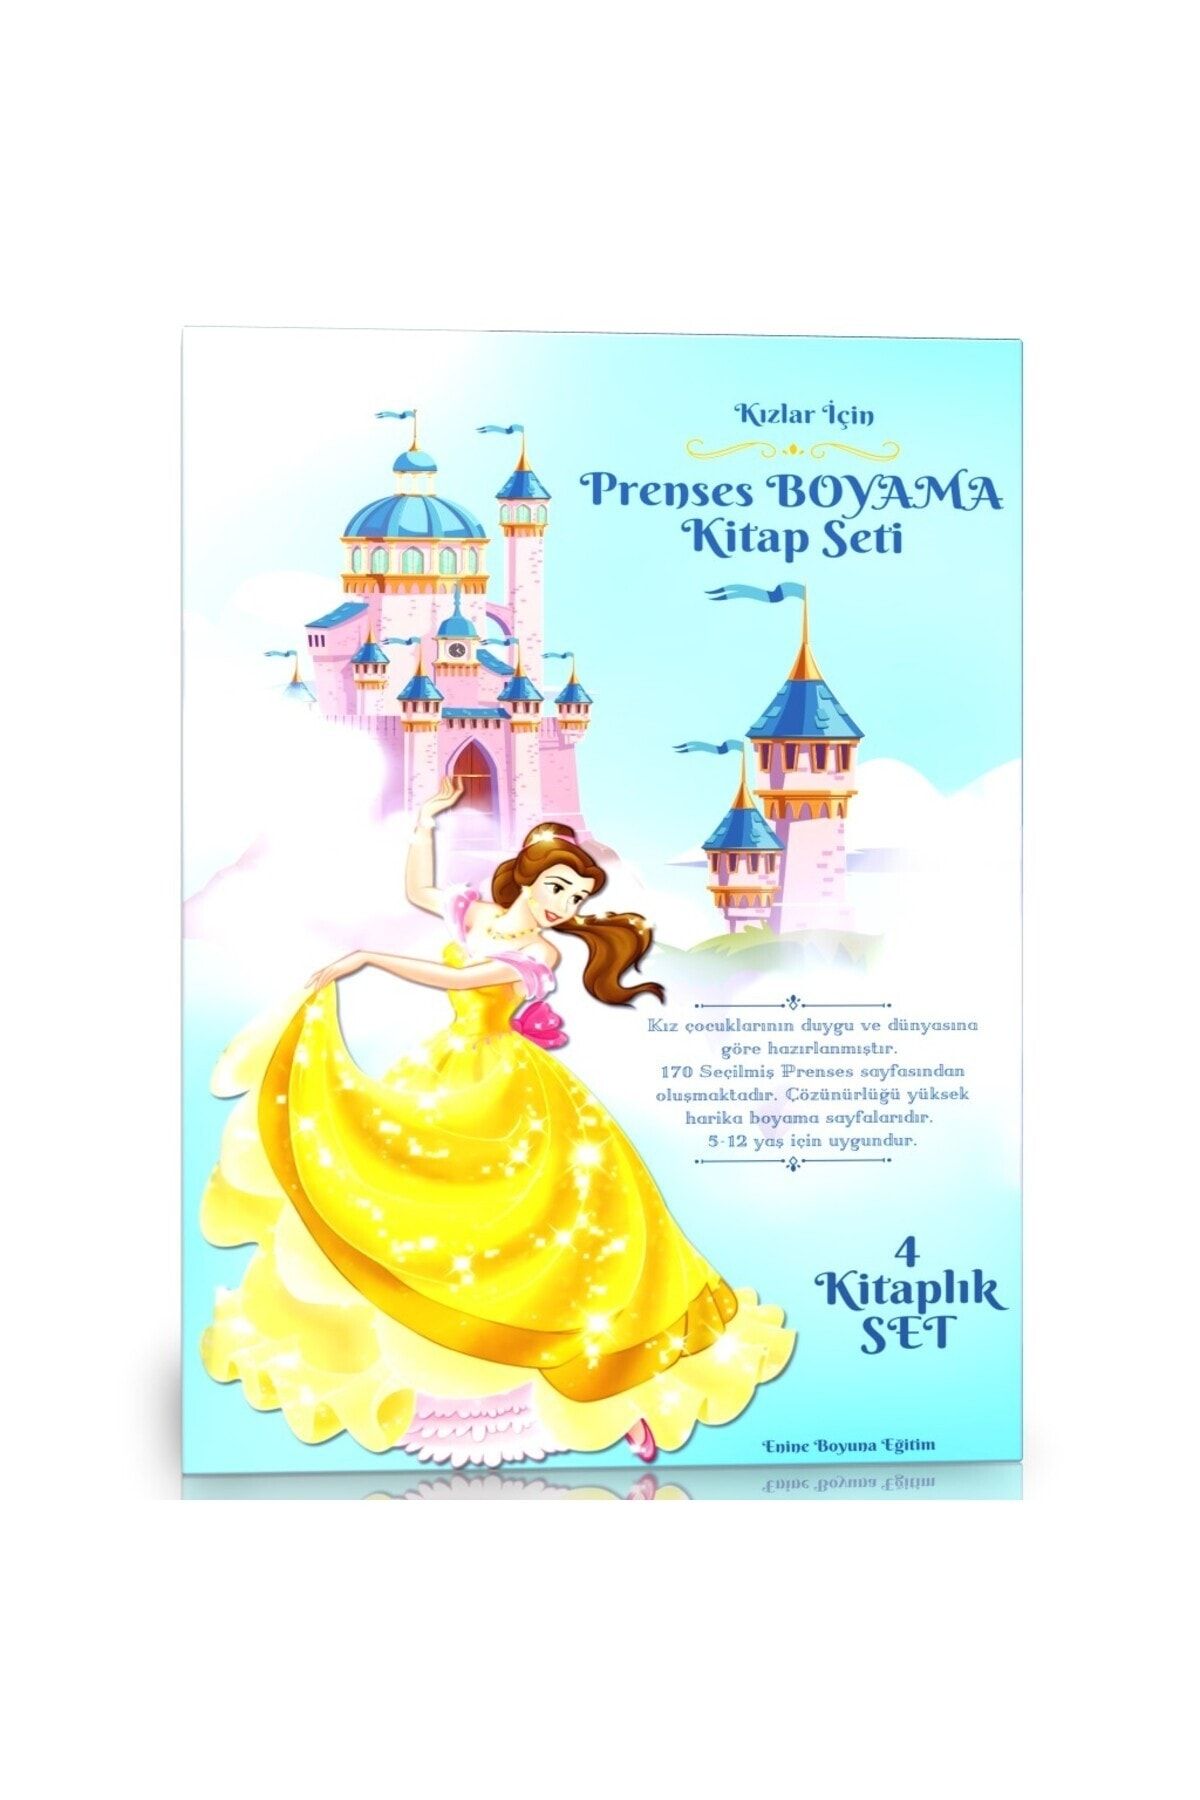 Enine Boyuna Eğitim Kızlar İçin Prenses Boyama Kitap Seti (4 Kitap)